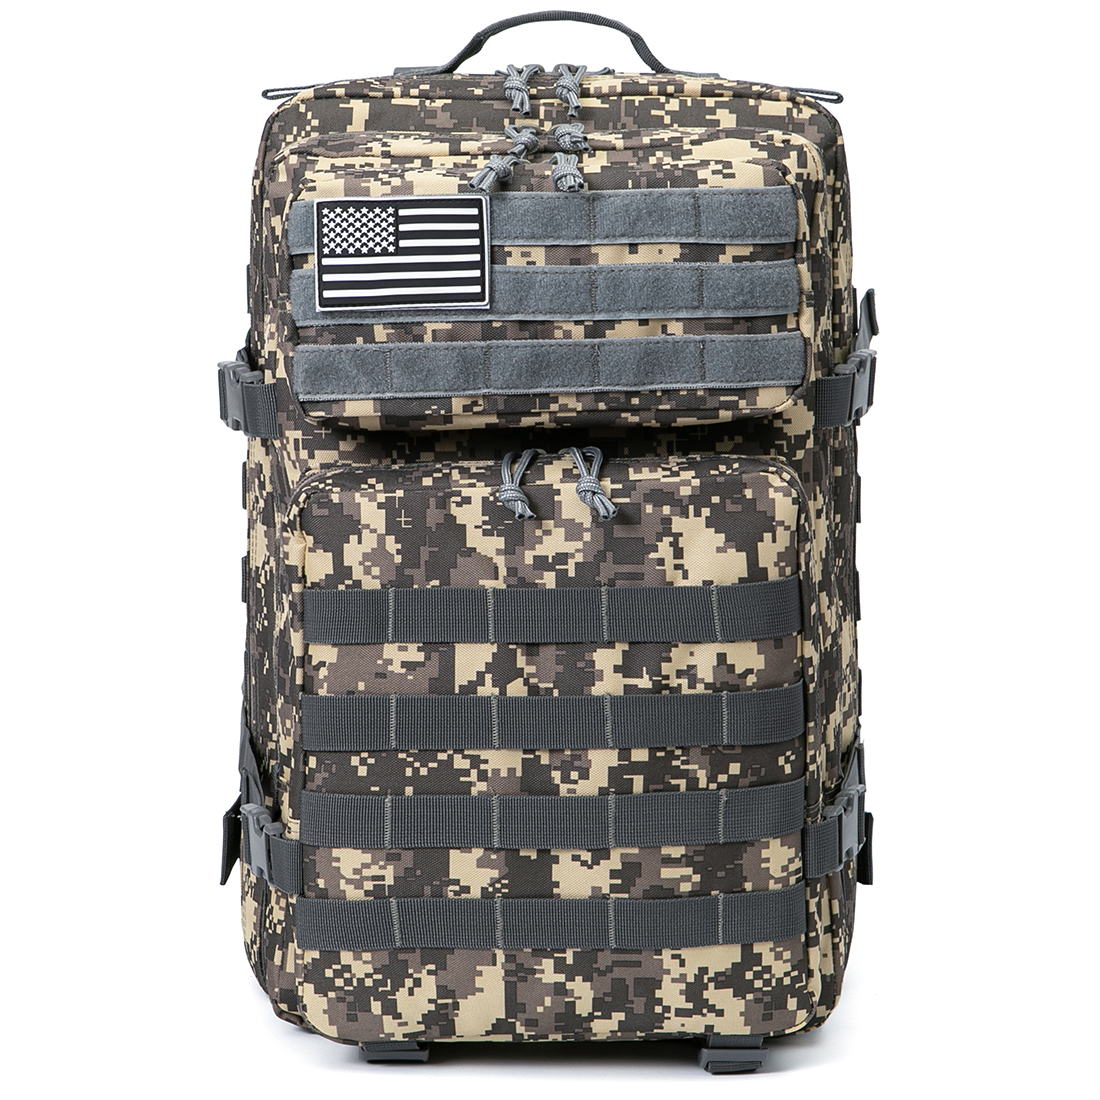 QT&QY 40L Military Tactical Duffle Bag & Tactical Toiletry Bag